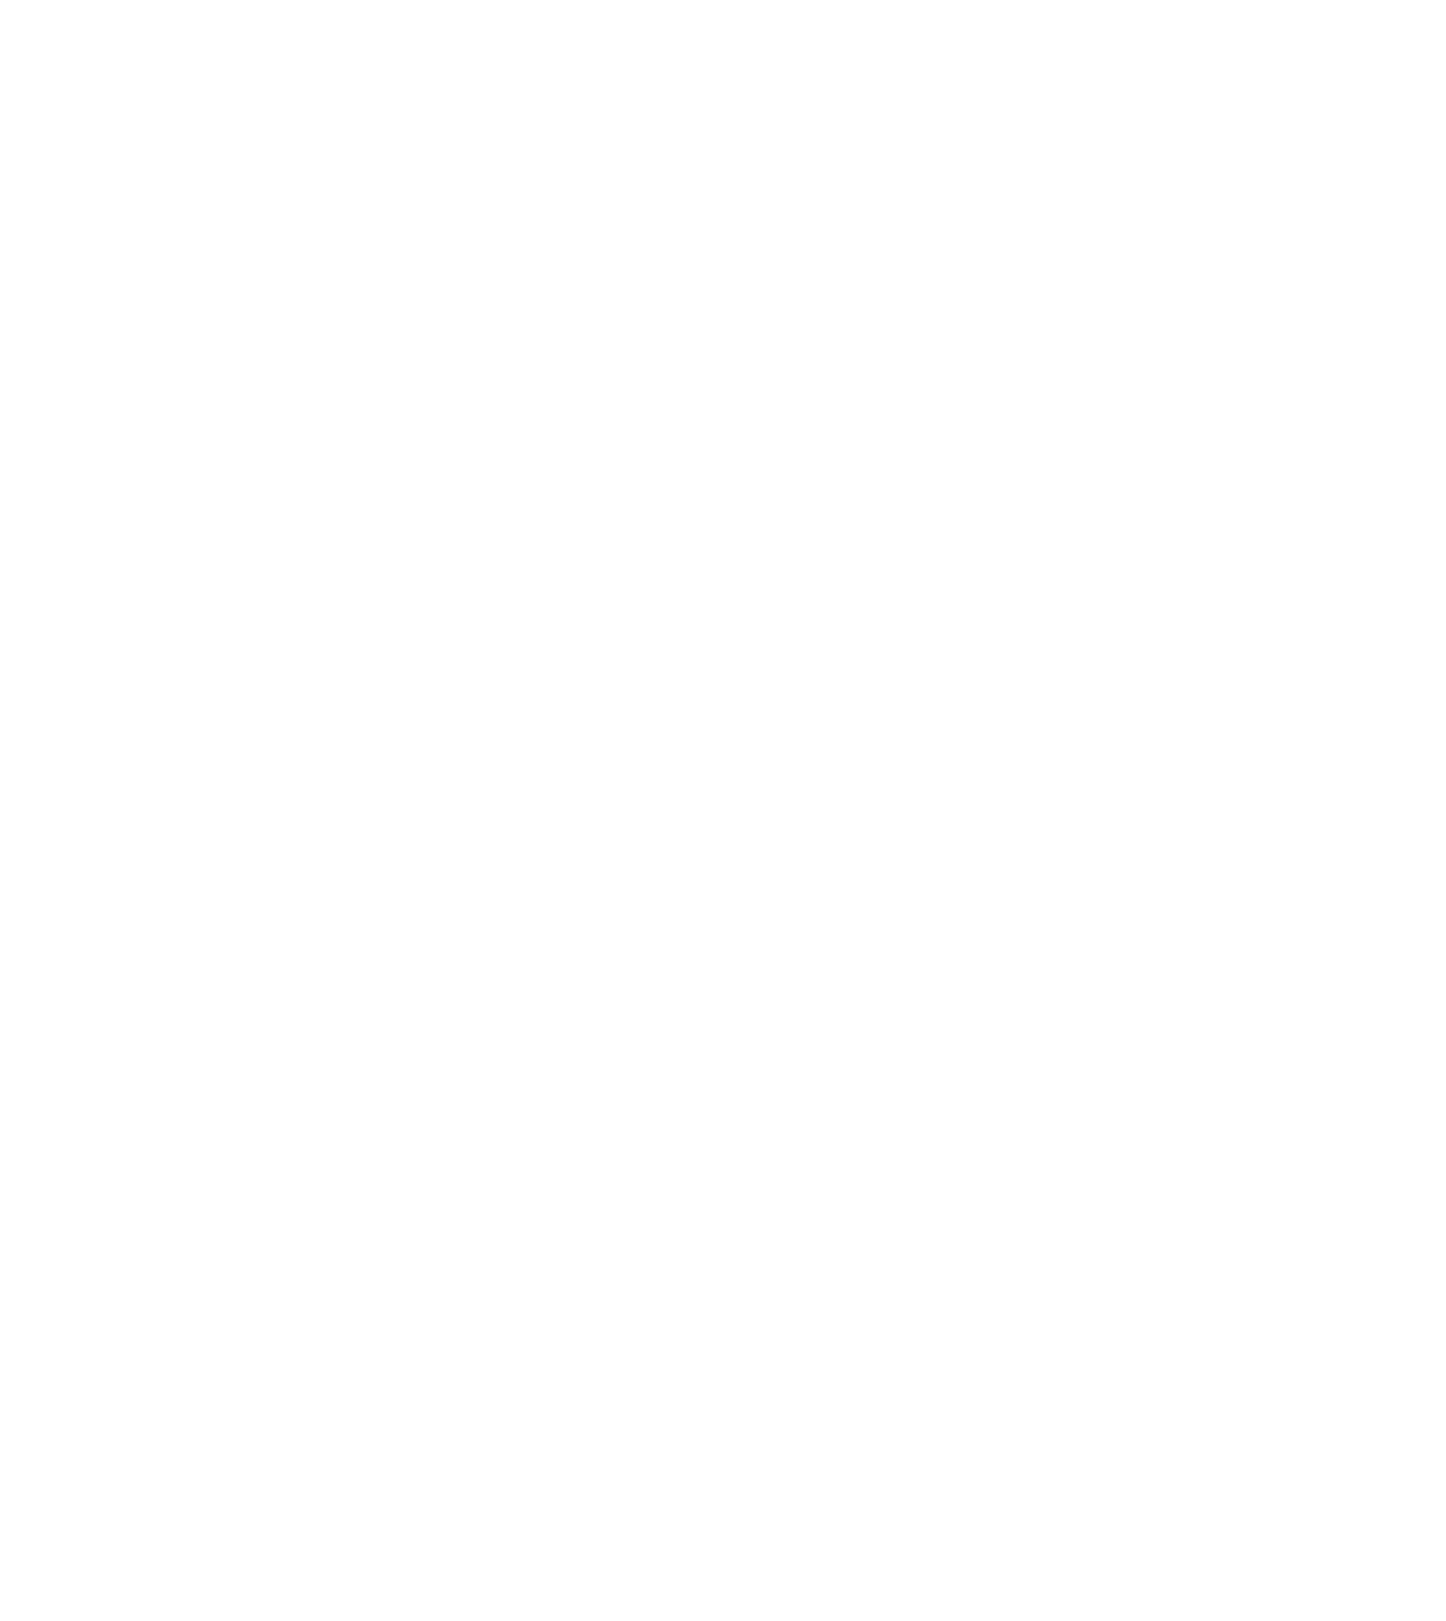 Poshmark logo pour fonds sombres (PNG transparent)